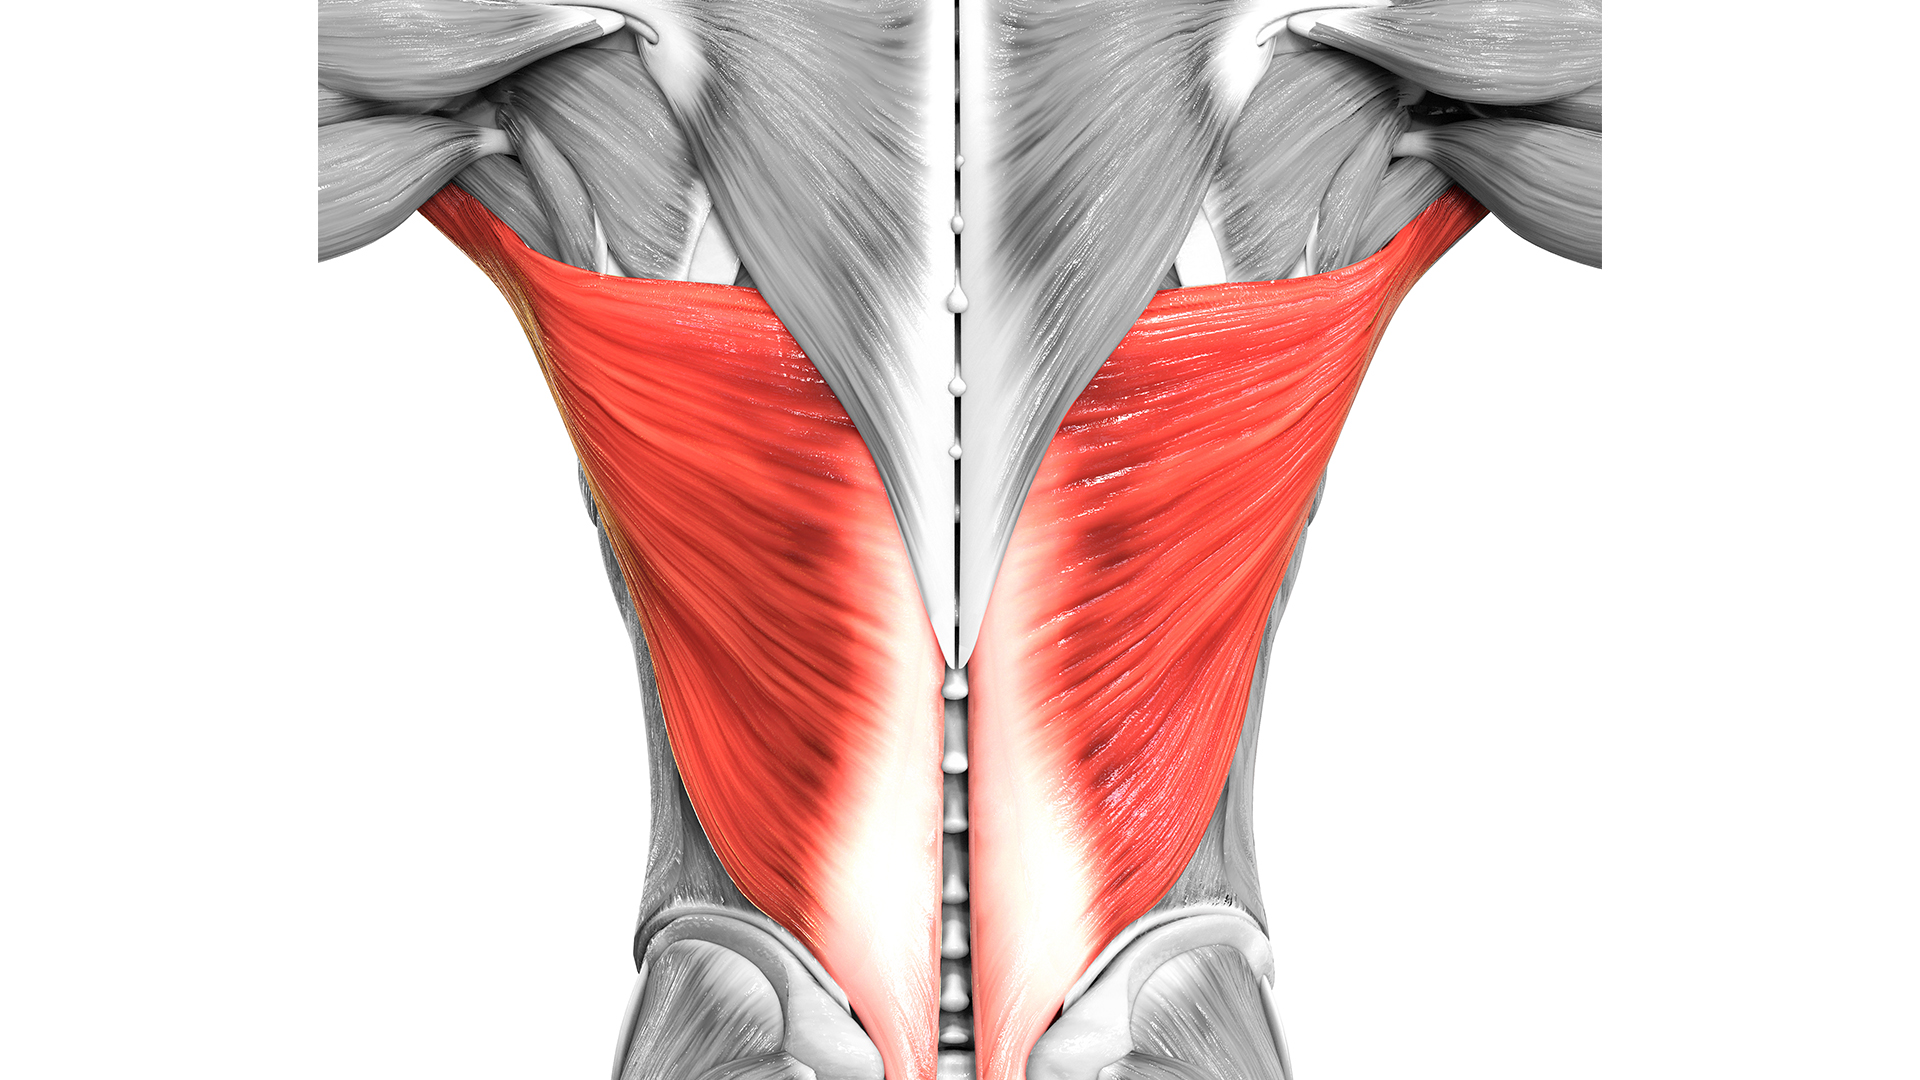 Los músculos de la espalda humana se muestran en blanco y negro, con solo el dorsal ancho mayor en rojo.